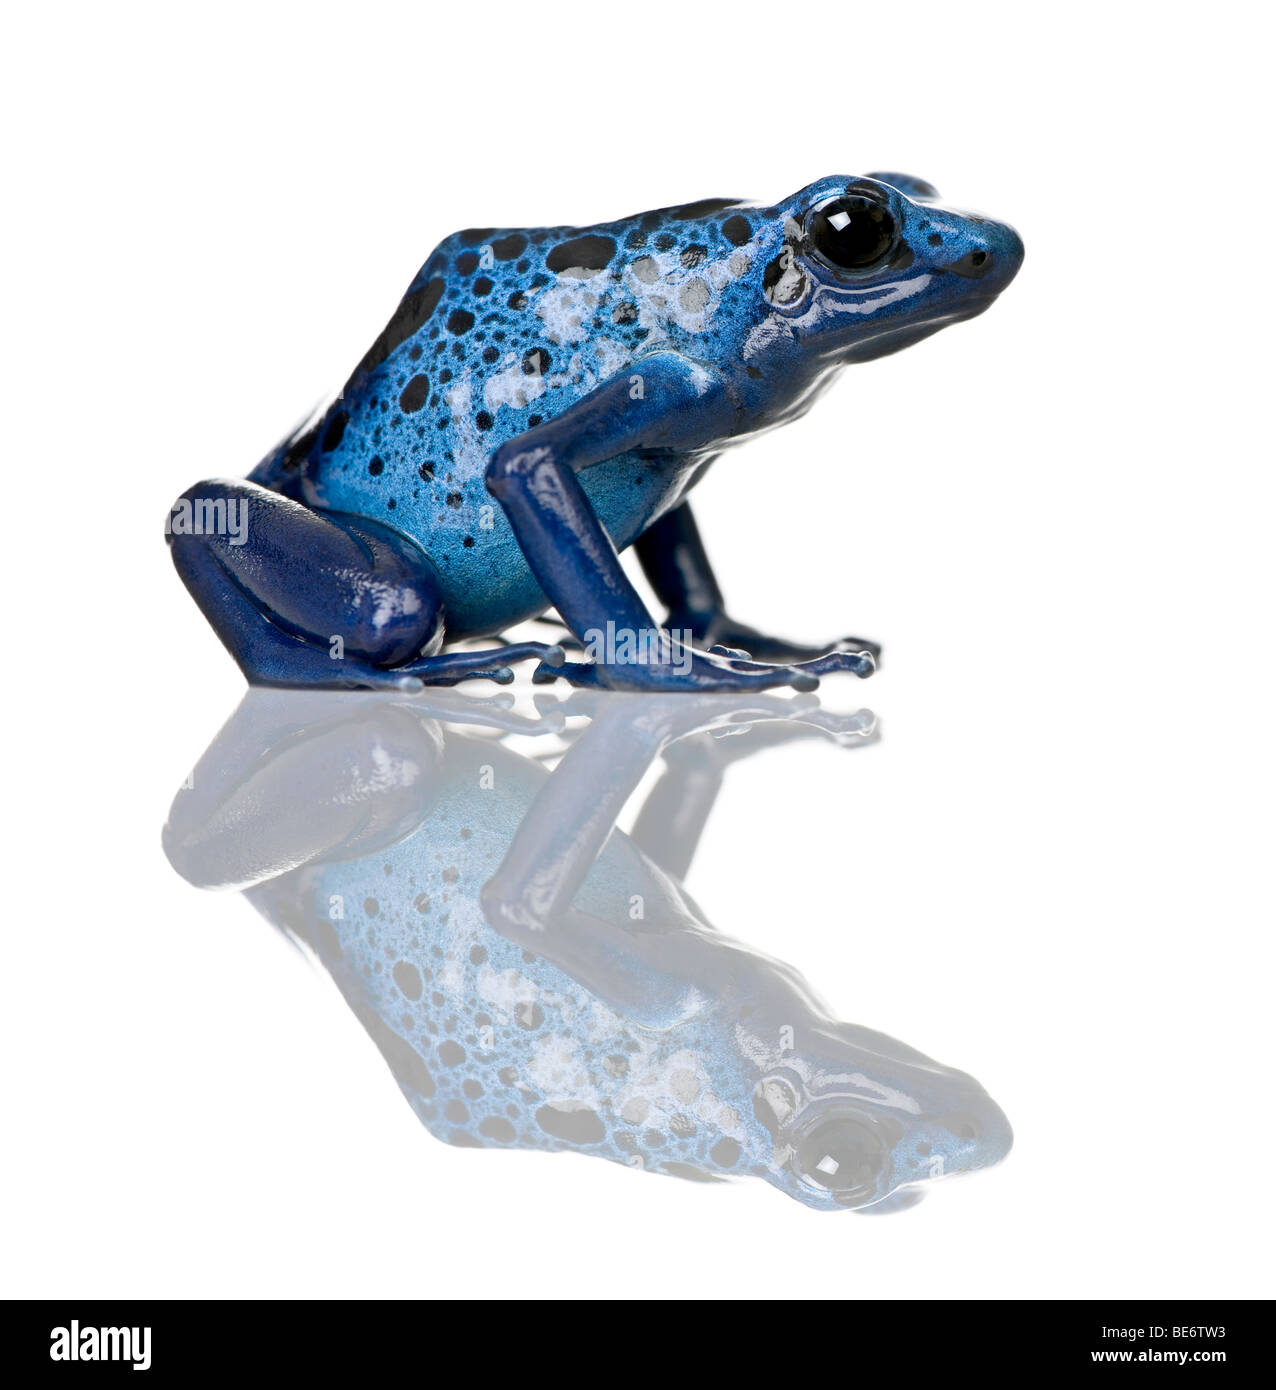 Blue Poison Dart frog, Dendrobates azureus, against white background, studio shot Banque D'Images